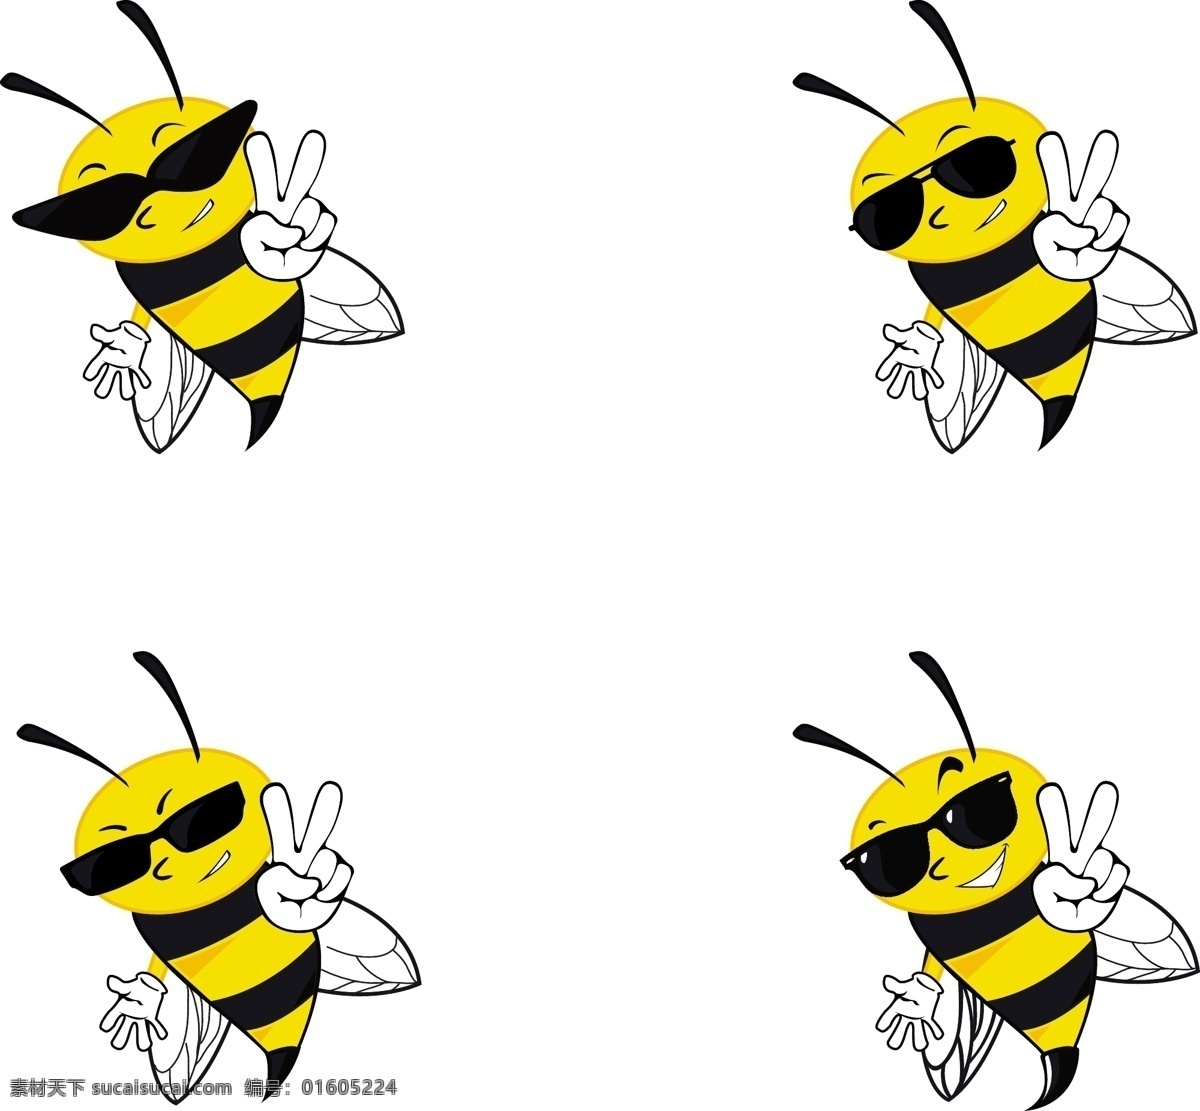 蜜蜂带着墨镜 花卉 动物 蜜蜂 蜂蜜 太阳眼镜 和平 有趣 酷 昆虫 白色